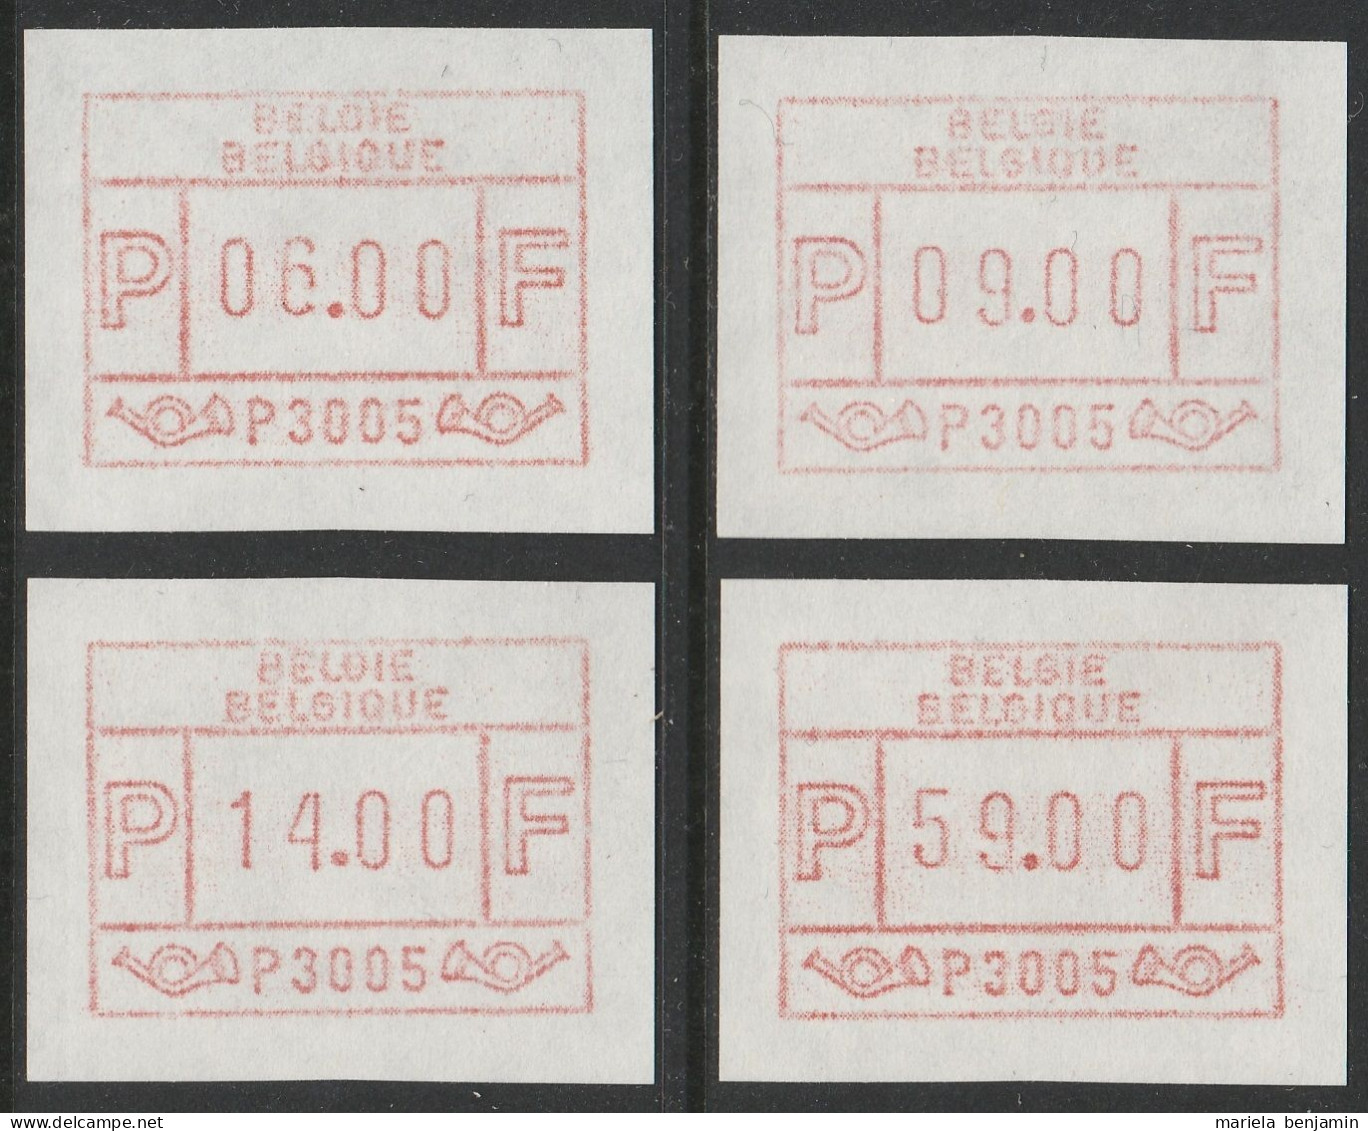 Belgique - Timbres ATM5 Bruxelles Série Des 4 Valeurs (6-9-14-59f) ** - 1980-99